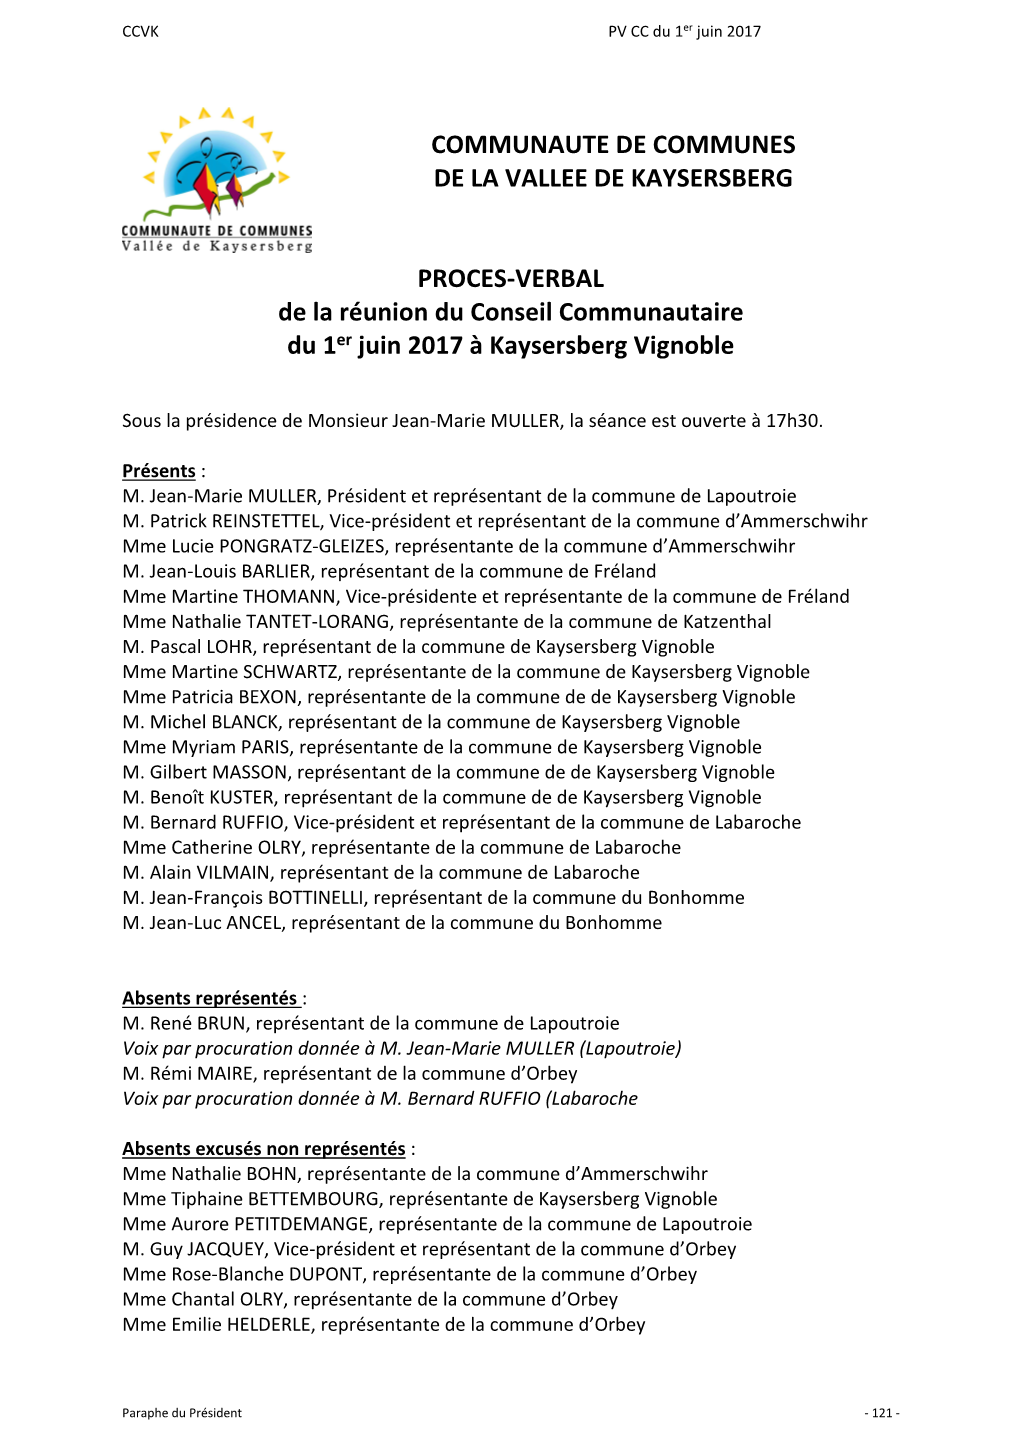 COMMUNAUTE DE COMMUNES DE LA VALLEE DE KAYSERSBERG PROCES-VERBAL De La Réunion Du Conseil Communautaire Du 1Er Juin 2017 À Ka